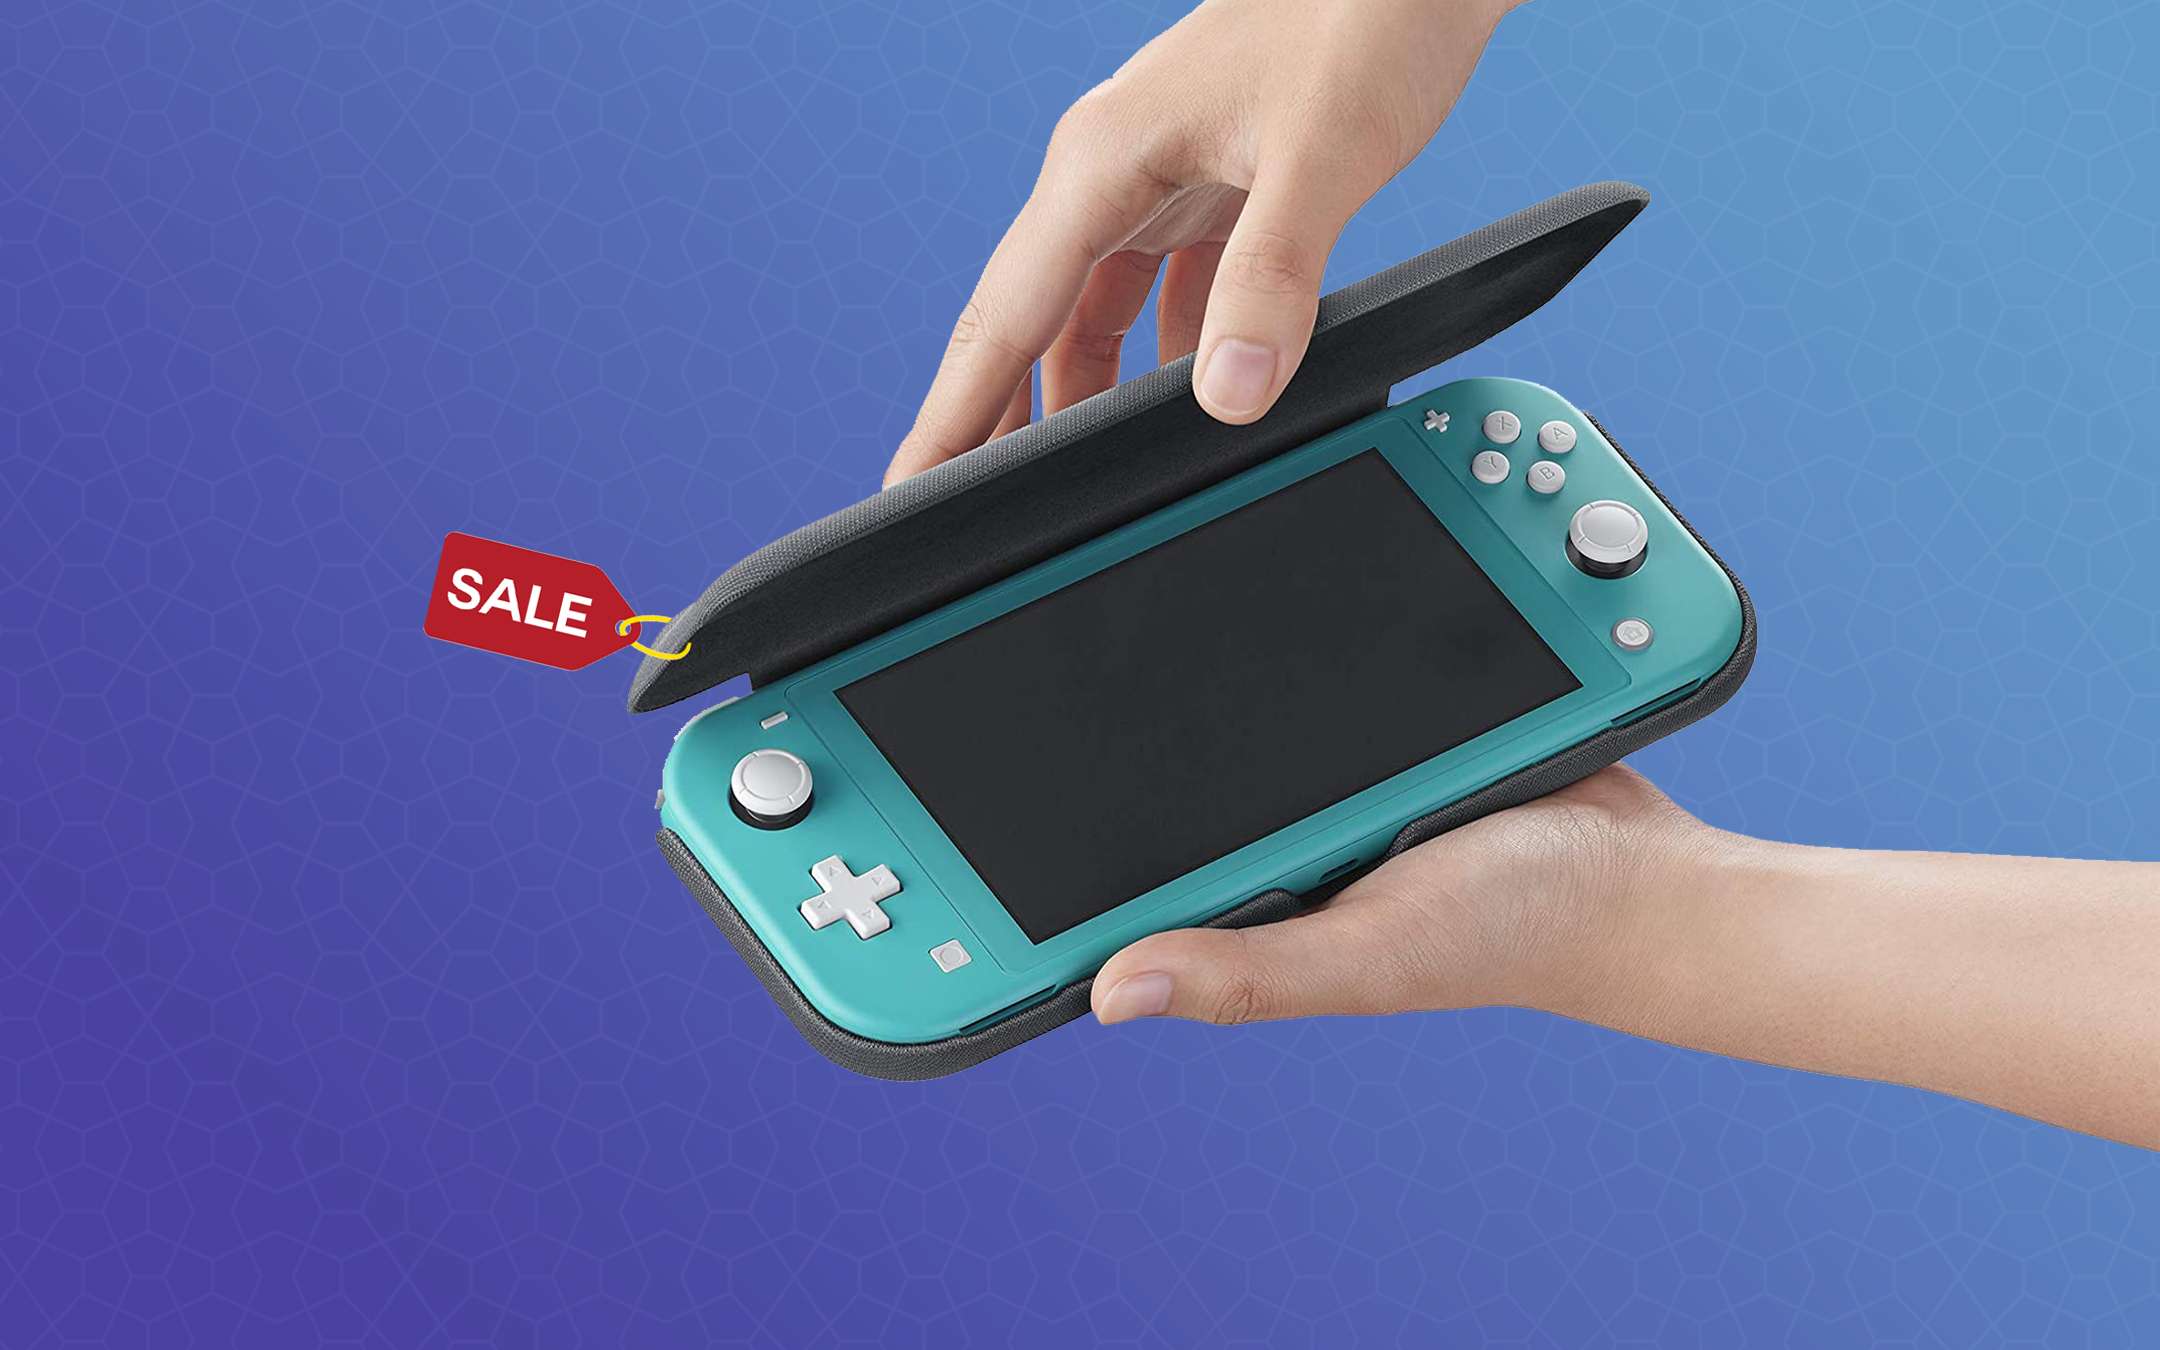 Nintendo Switch Lite: custodia protettiva in offerta a soli 13€